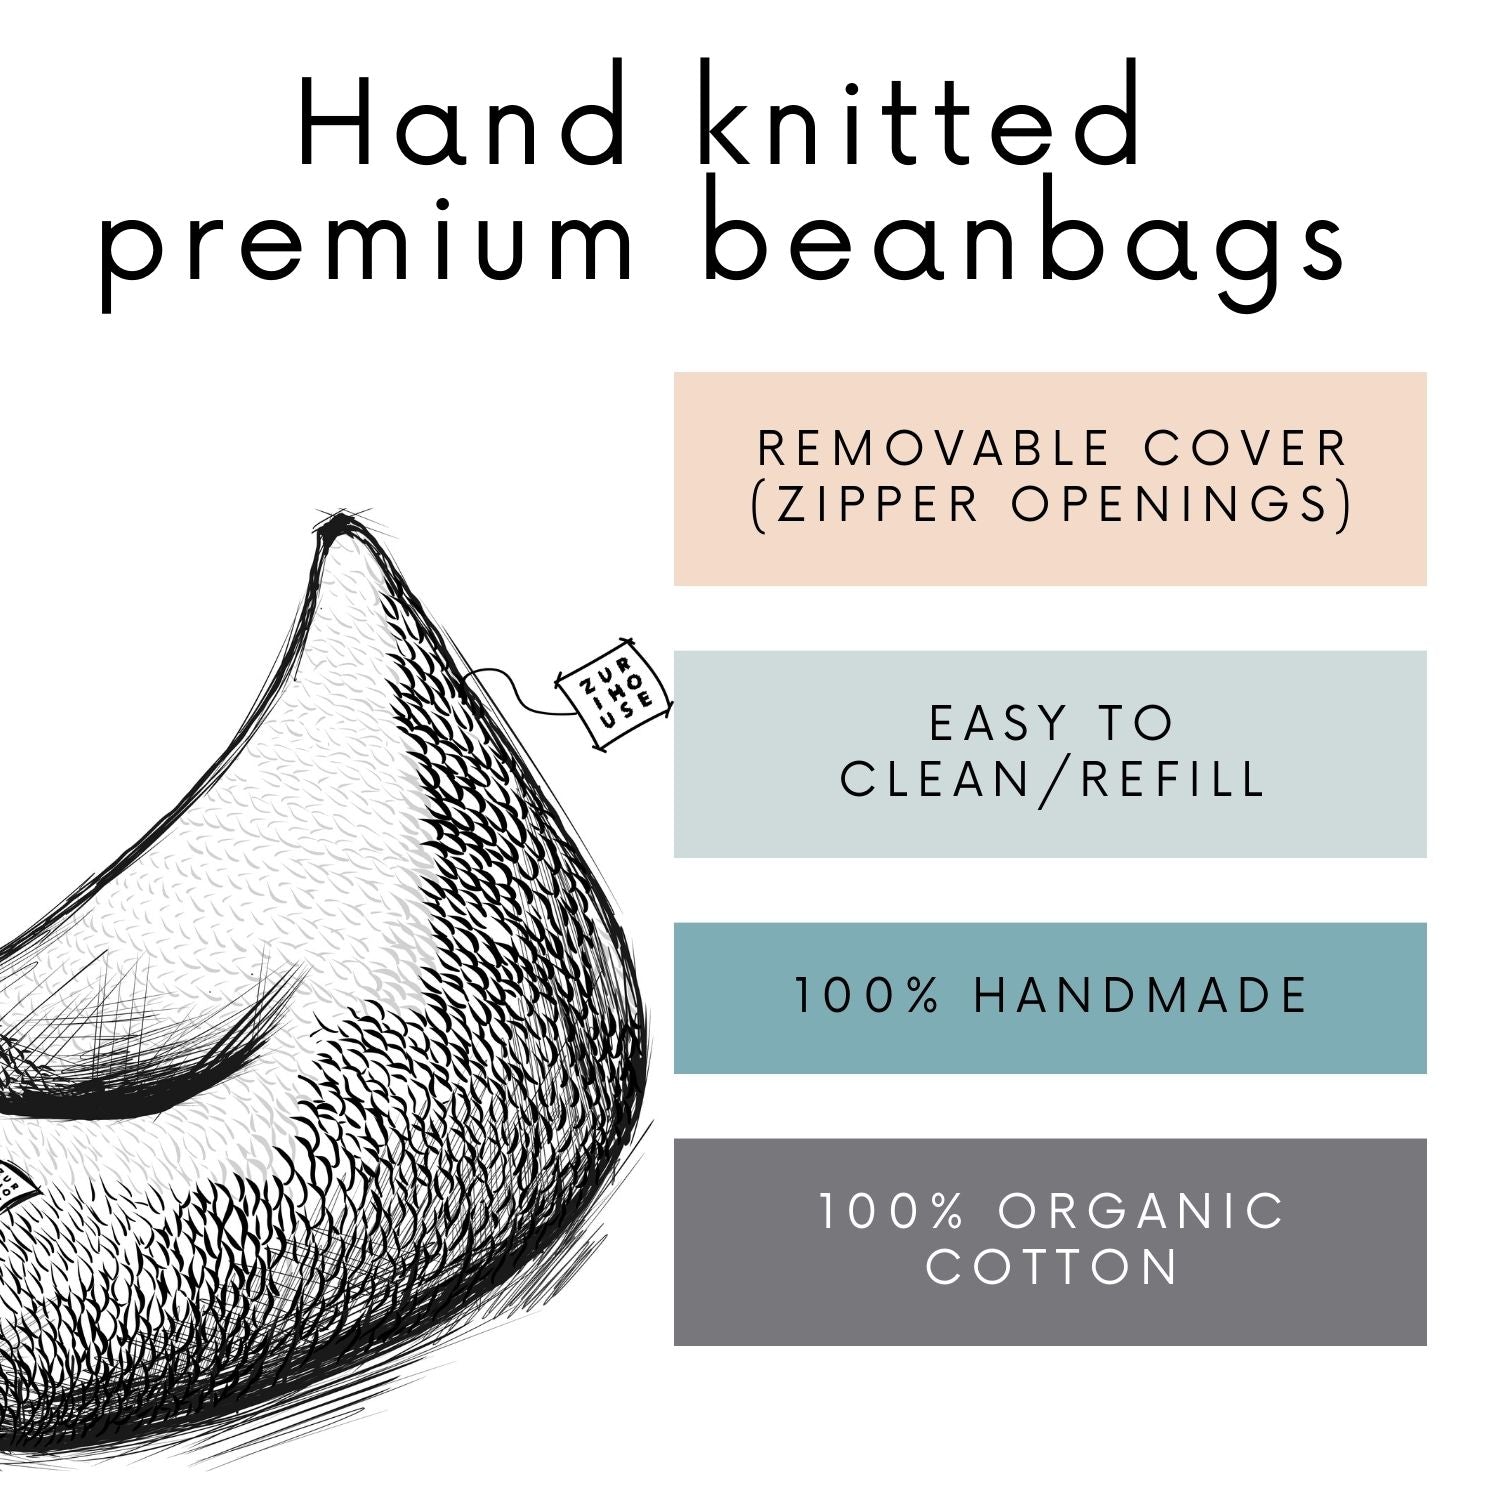 Knitted bean bag | BOTTLE GREEN